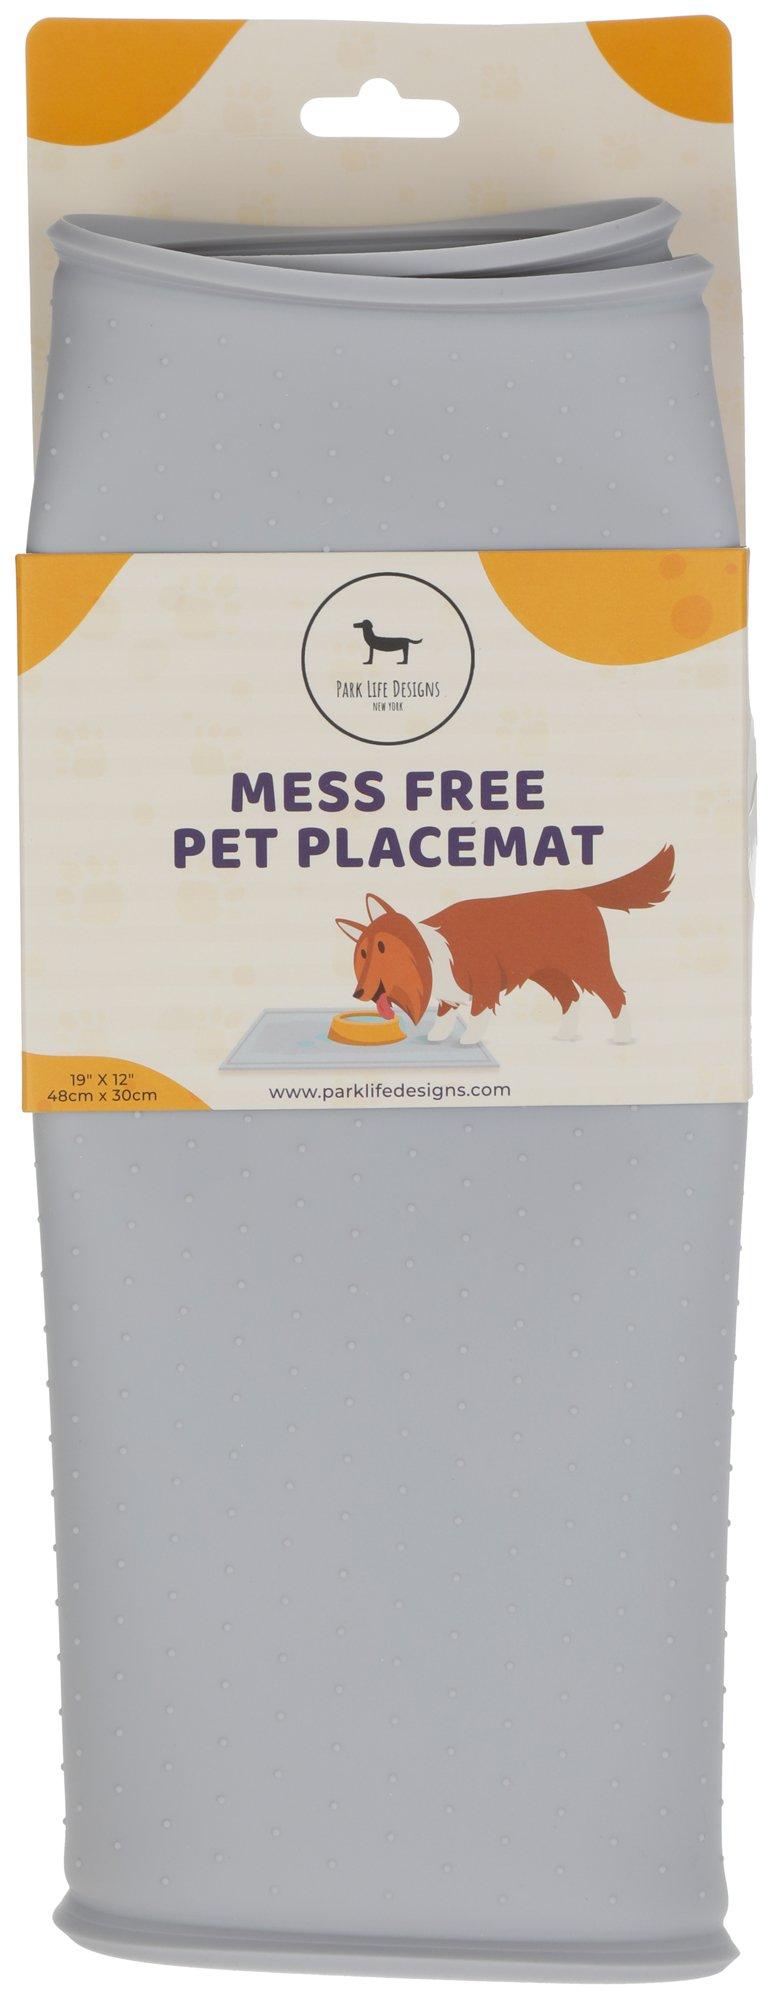 Mess Free Pet Placemat